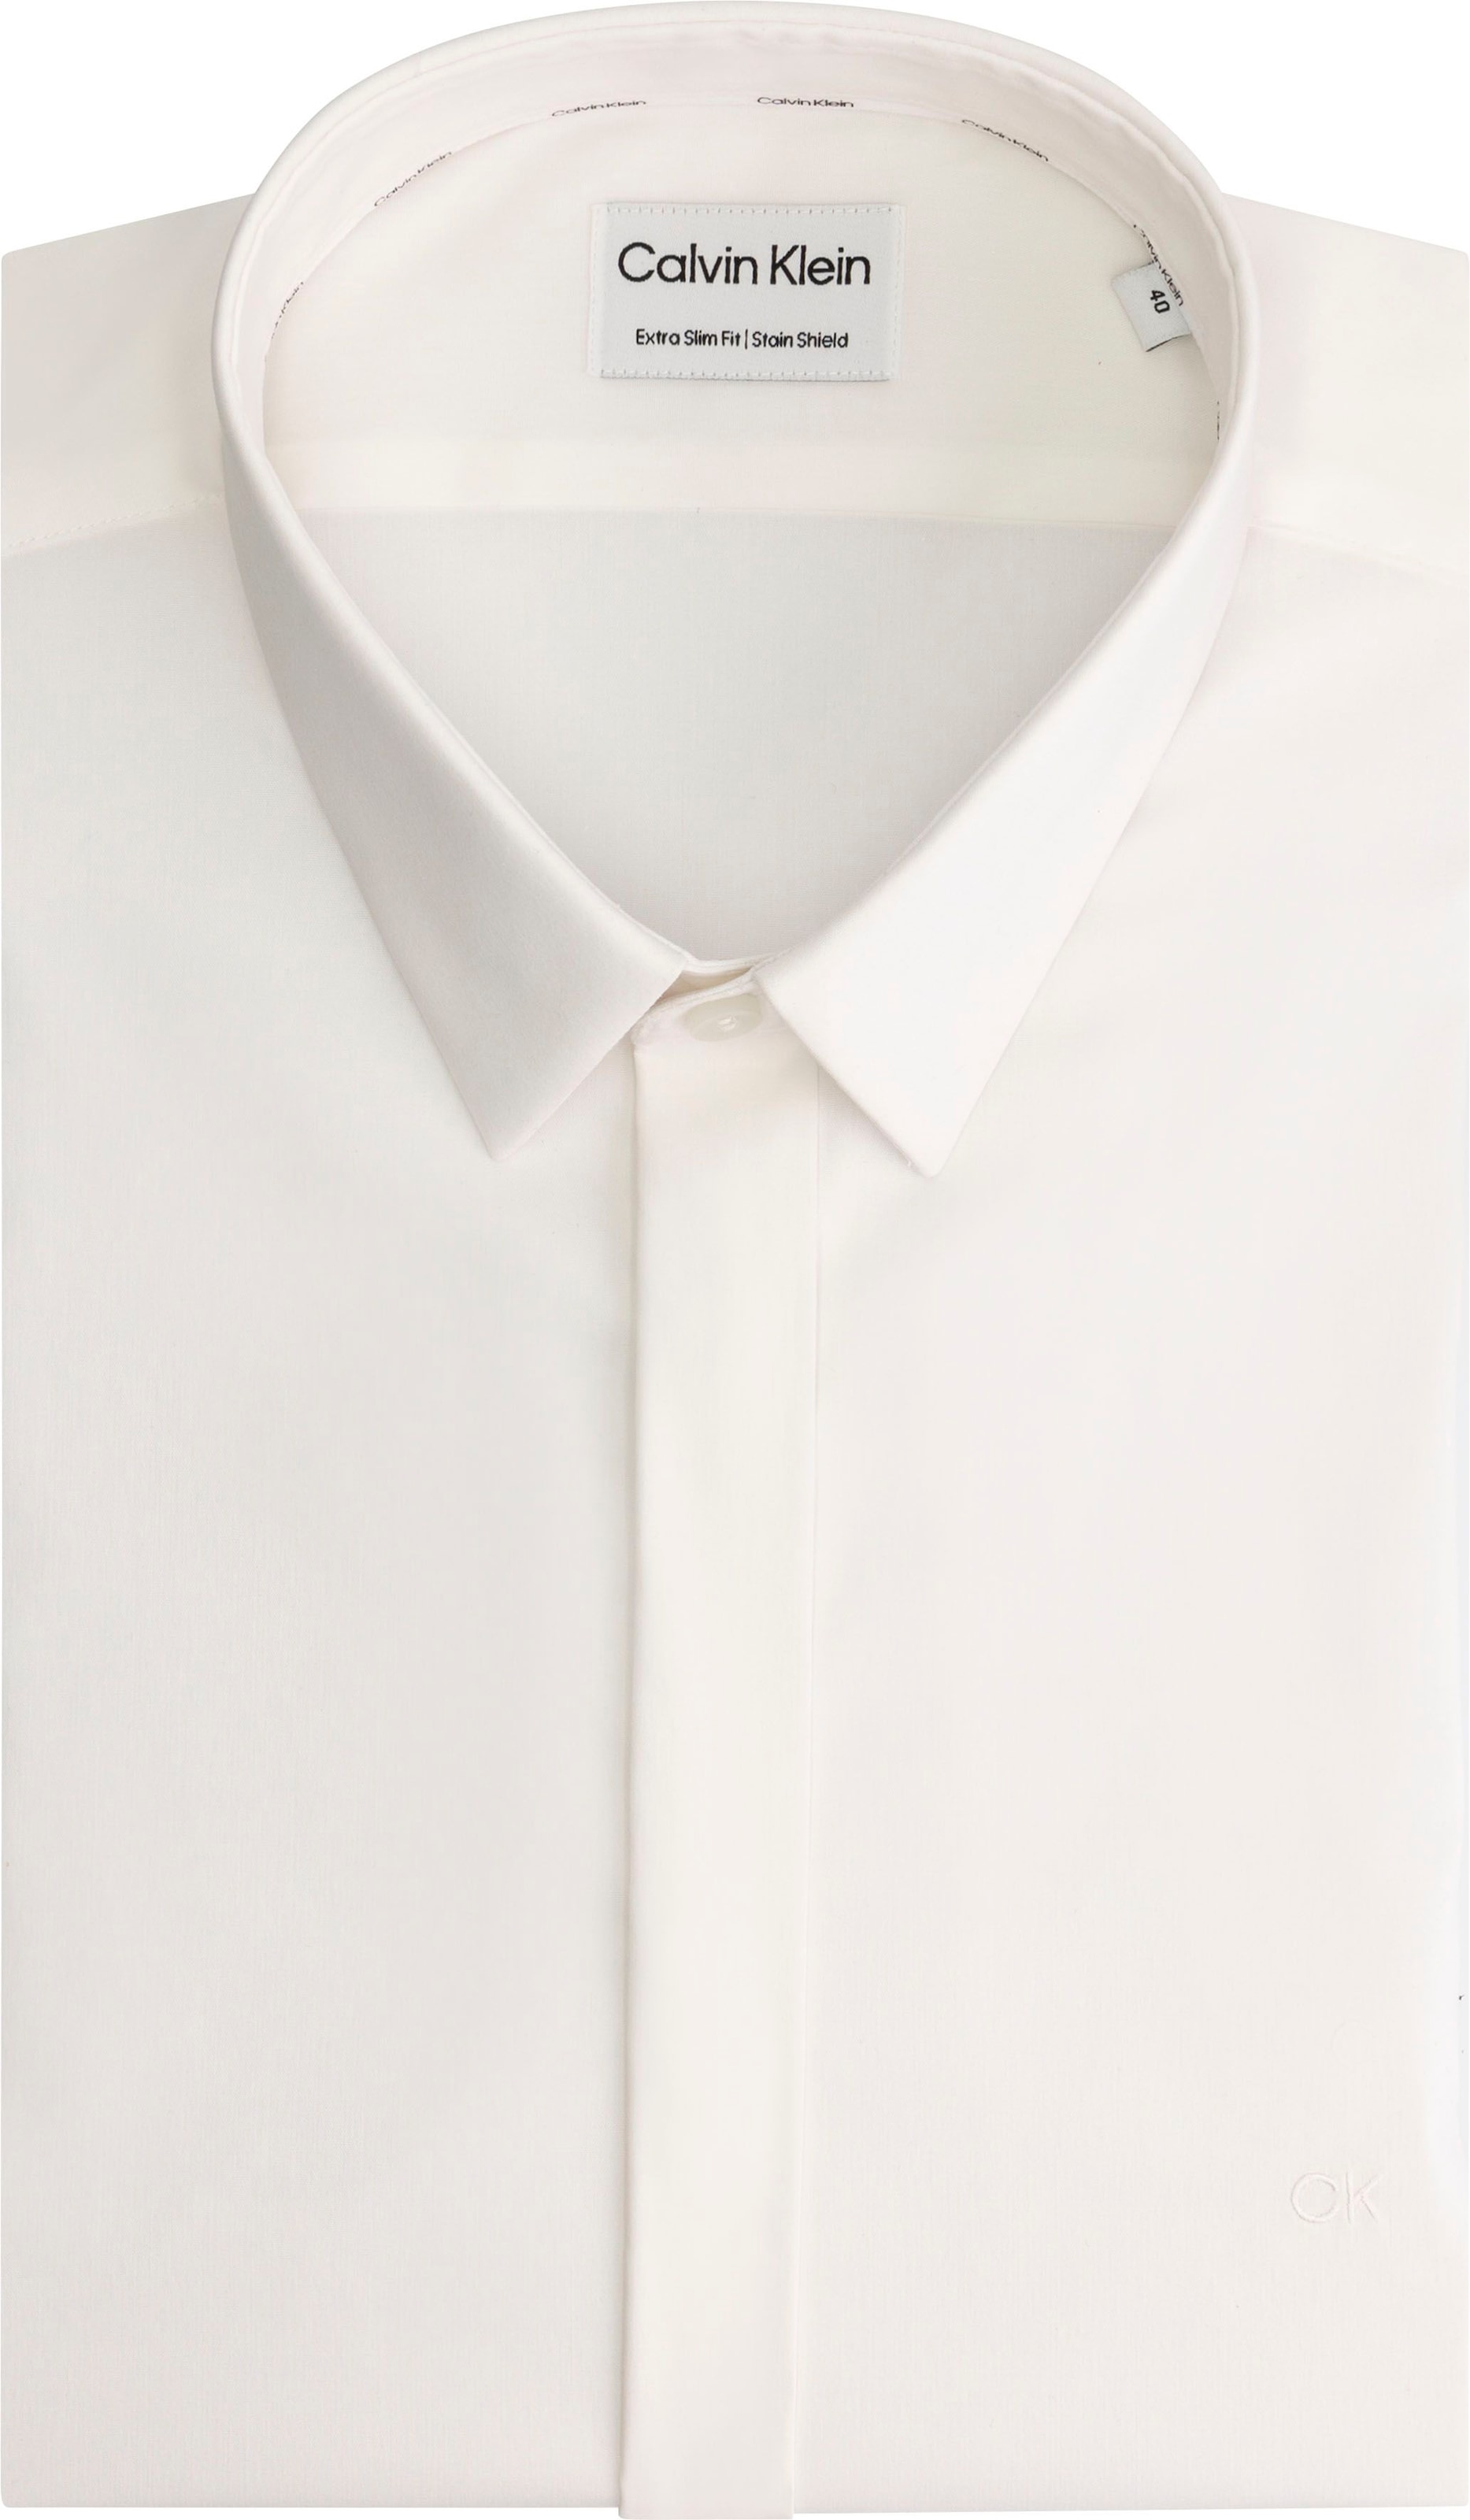 Langarmhemd, mit Calvin Klein Logo